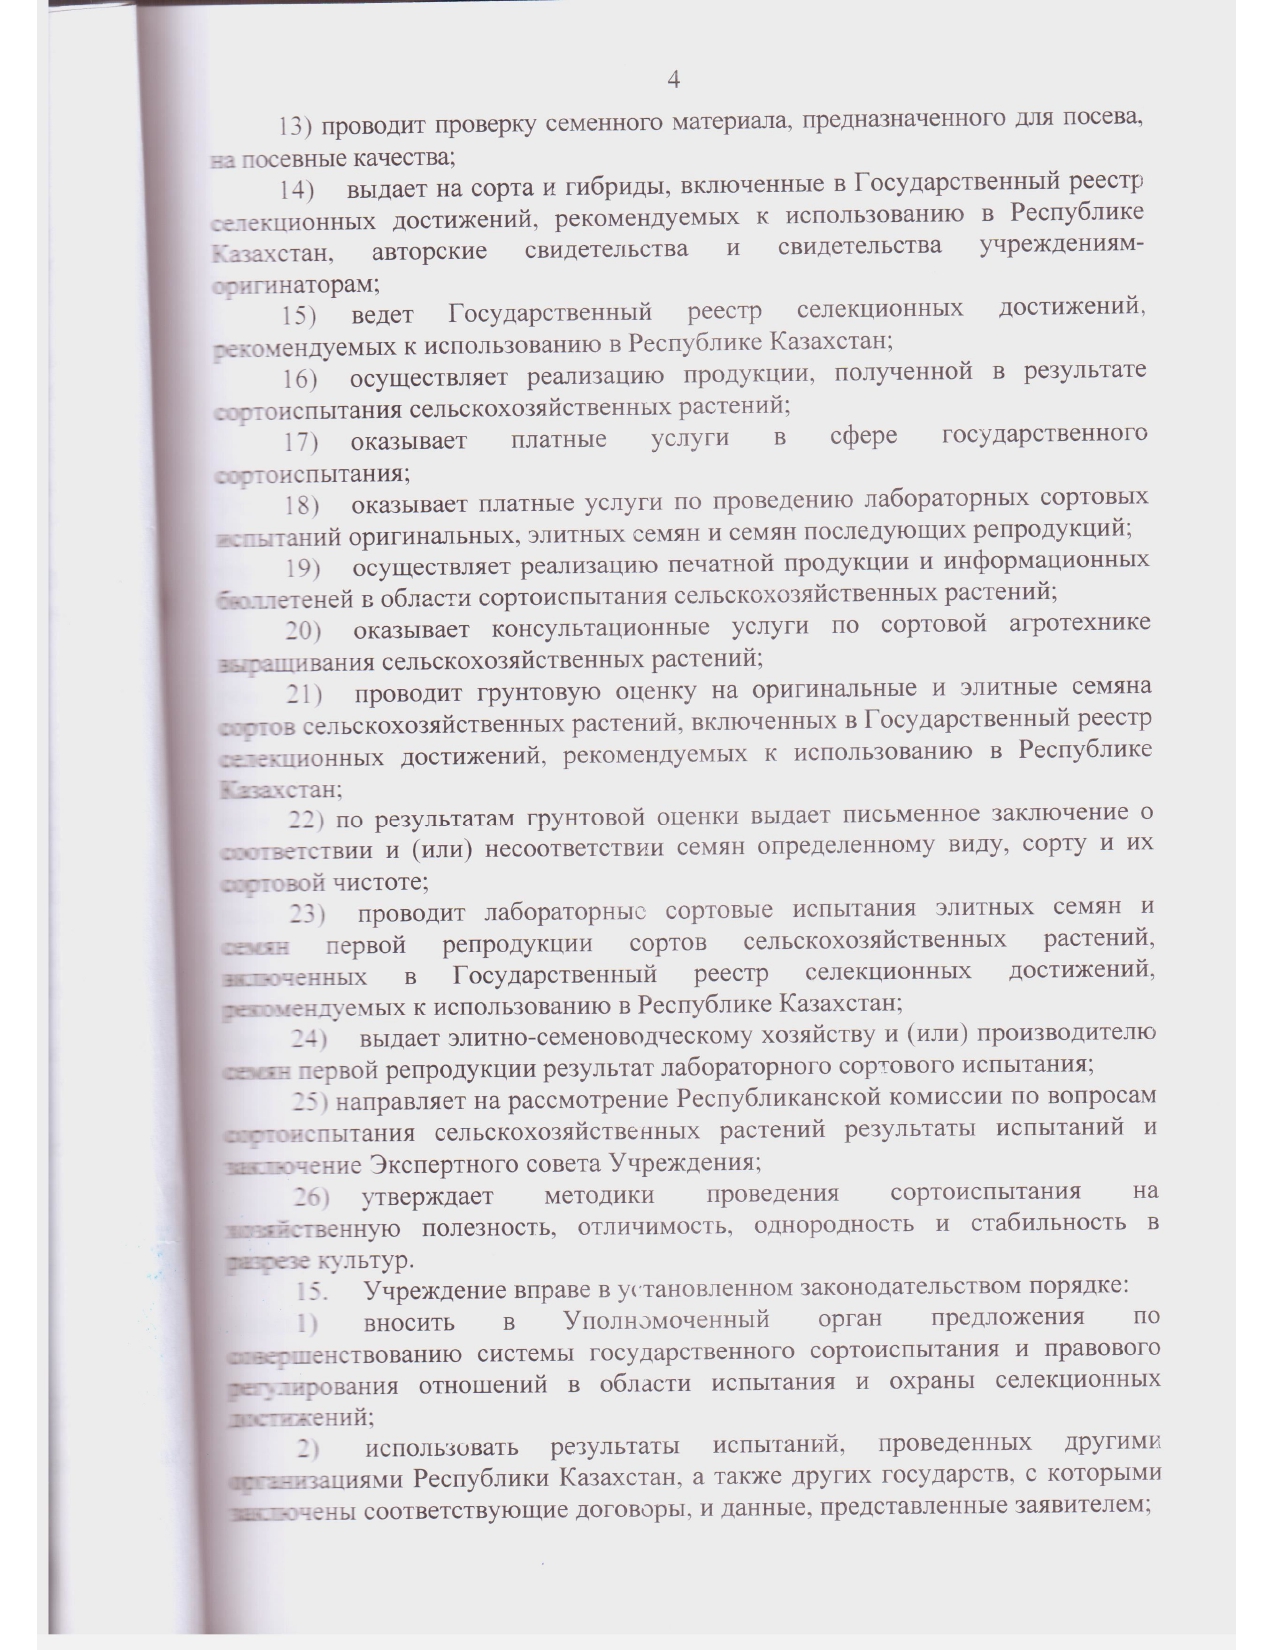 Устав ГосКомиссии_2021 год зарегистрирован_page-0018